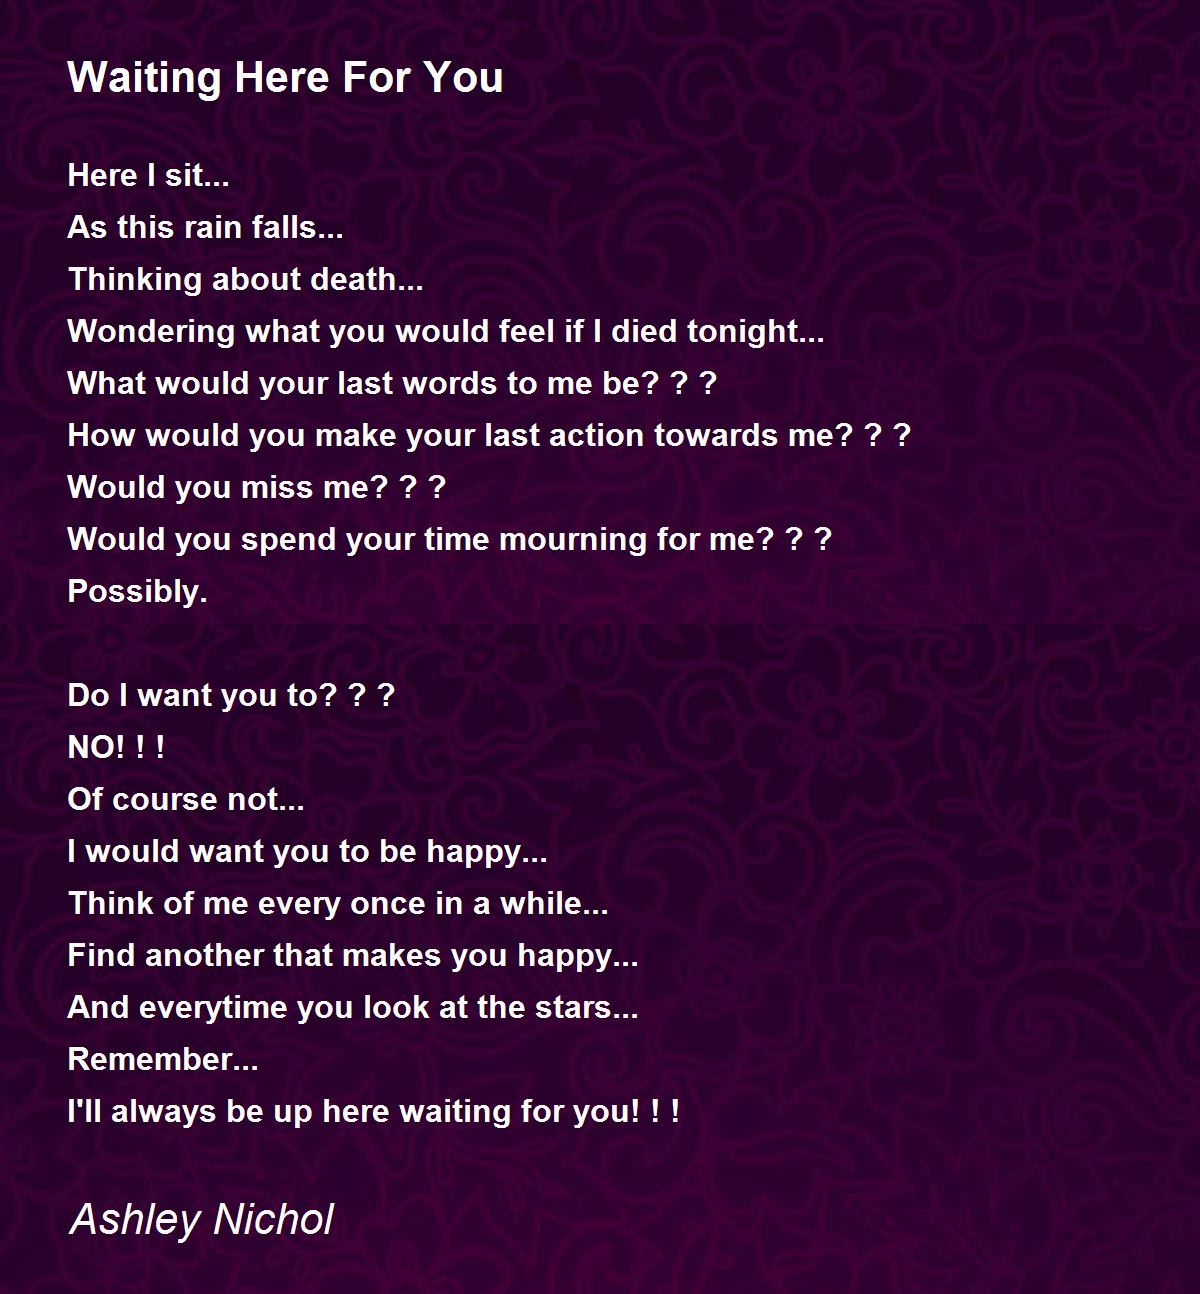 Waiting Here For You - Waiting Here For You Poem by Ashley Nichol